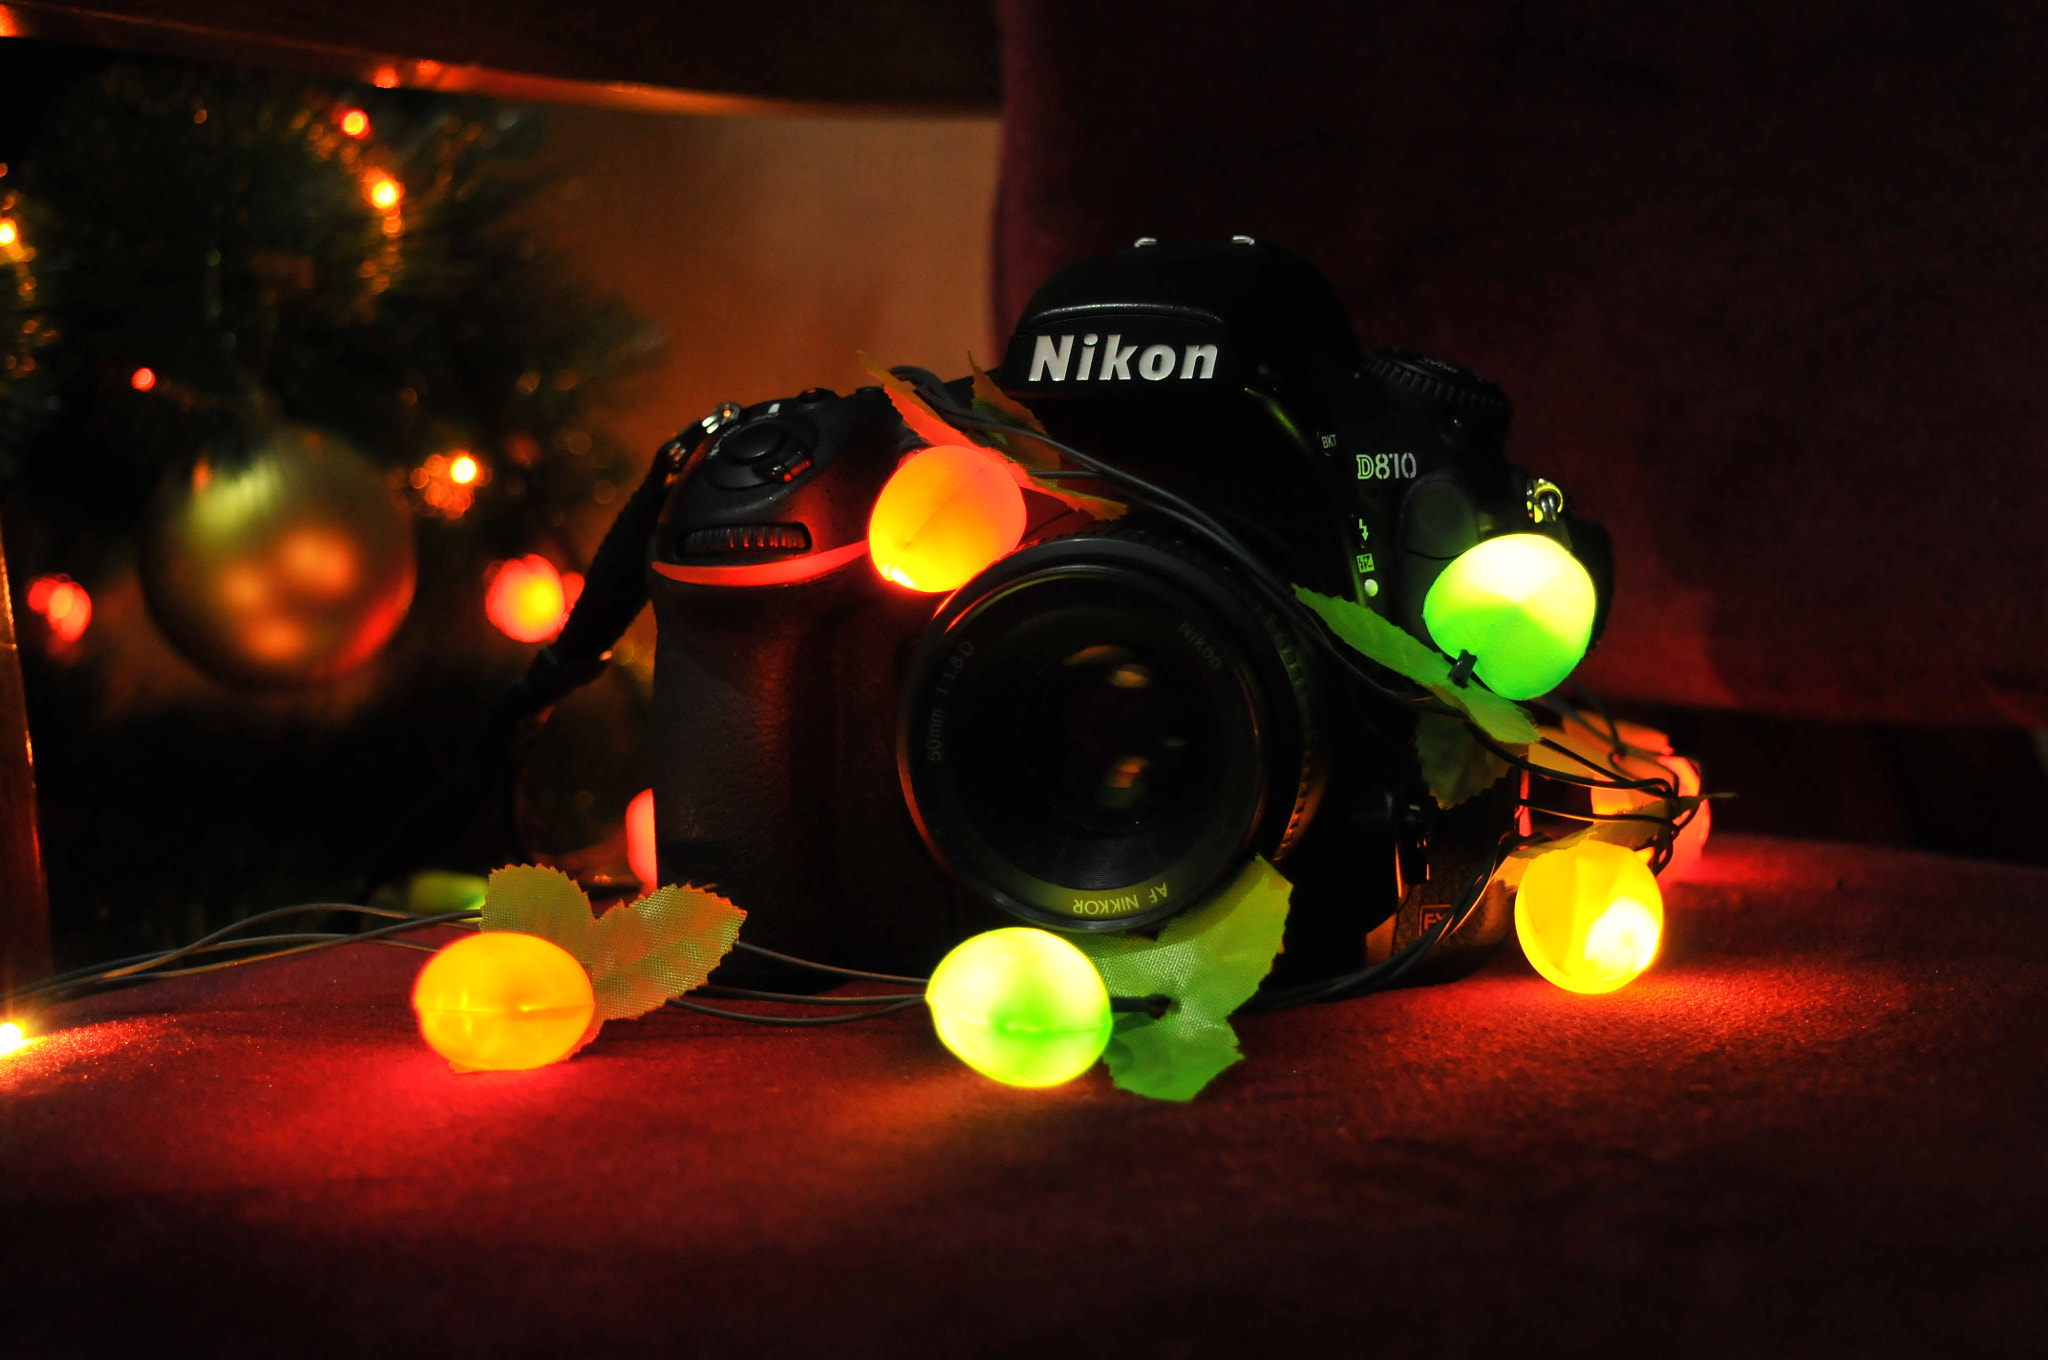 Nikon D300 + Nikon AF-S DX Nikkor 18-55mm F3.5-5.6G VR II sample photo. D810 photography